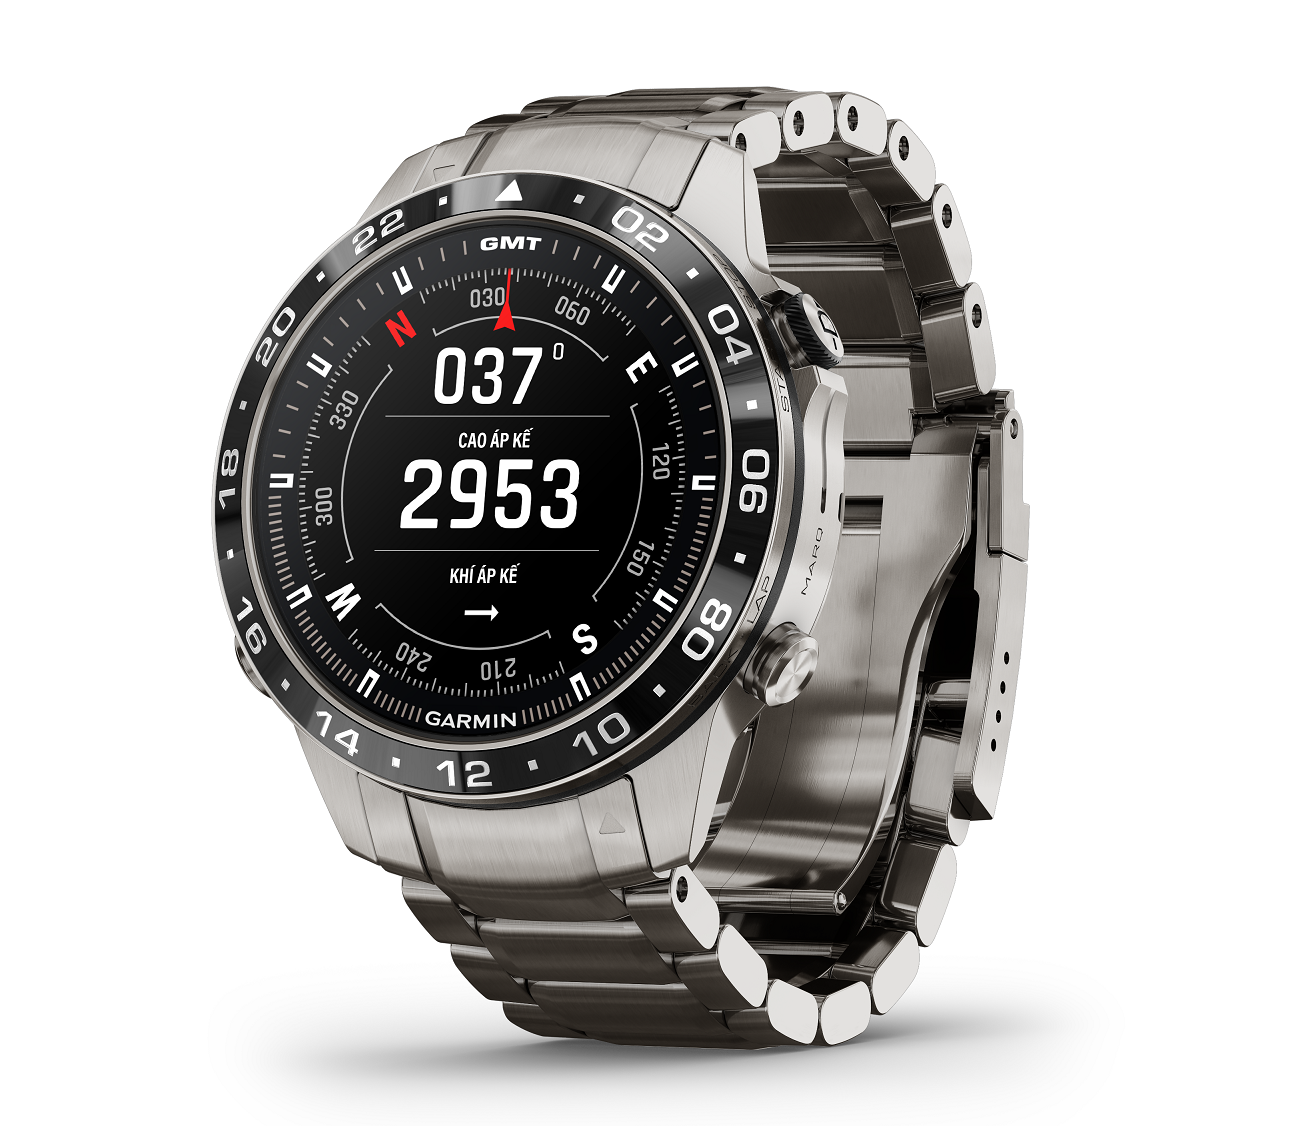 Garmin ra mắt bộ sưu tập đồng hồ MARQ cao cấp dành cho thám hiểm và thể thao, giá từ 51 triệu đồng - Marq2 Aviator HR 1000.01